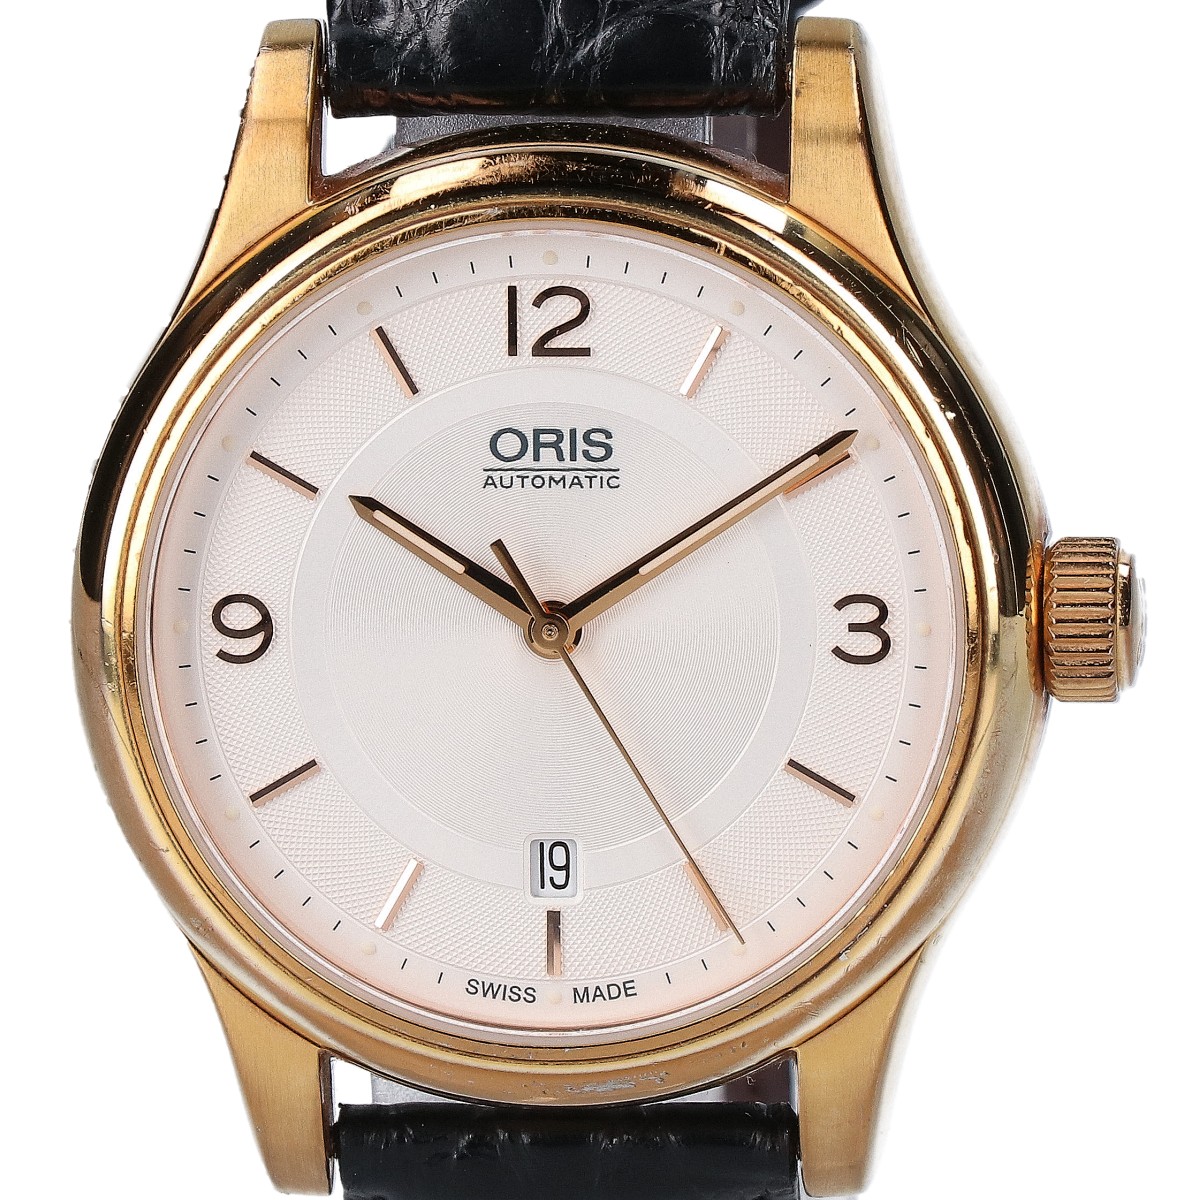 オリスの7594 クラシックデイト シースルーバック自動巻き腕時計の買取実績です。